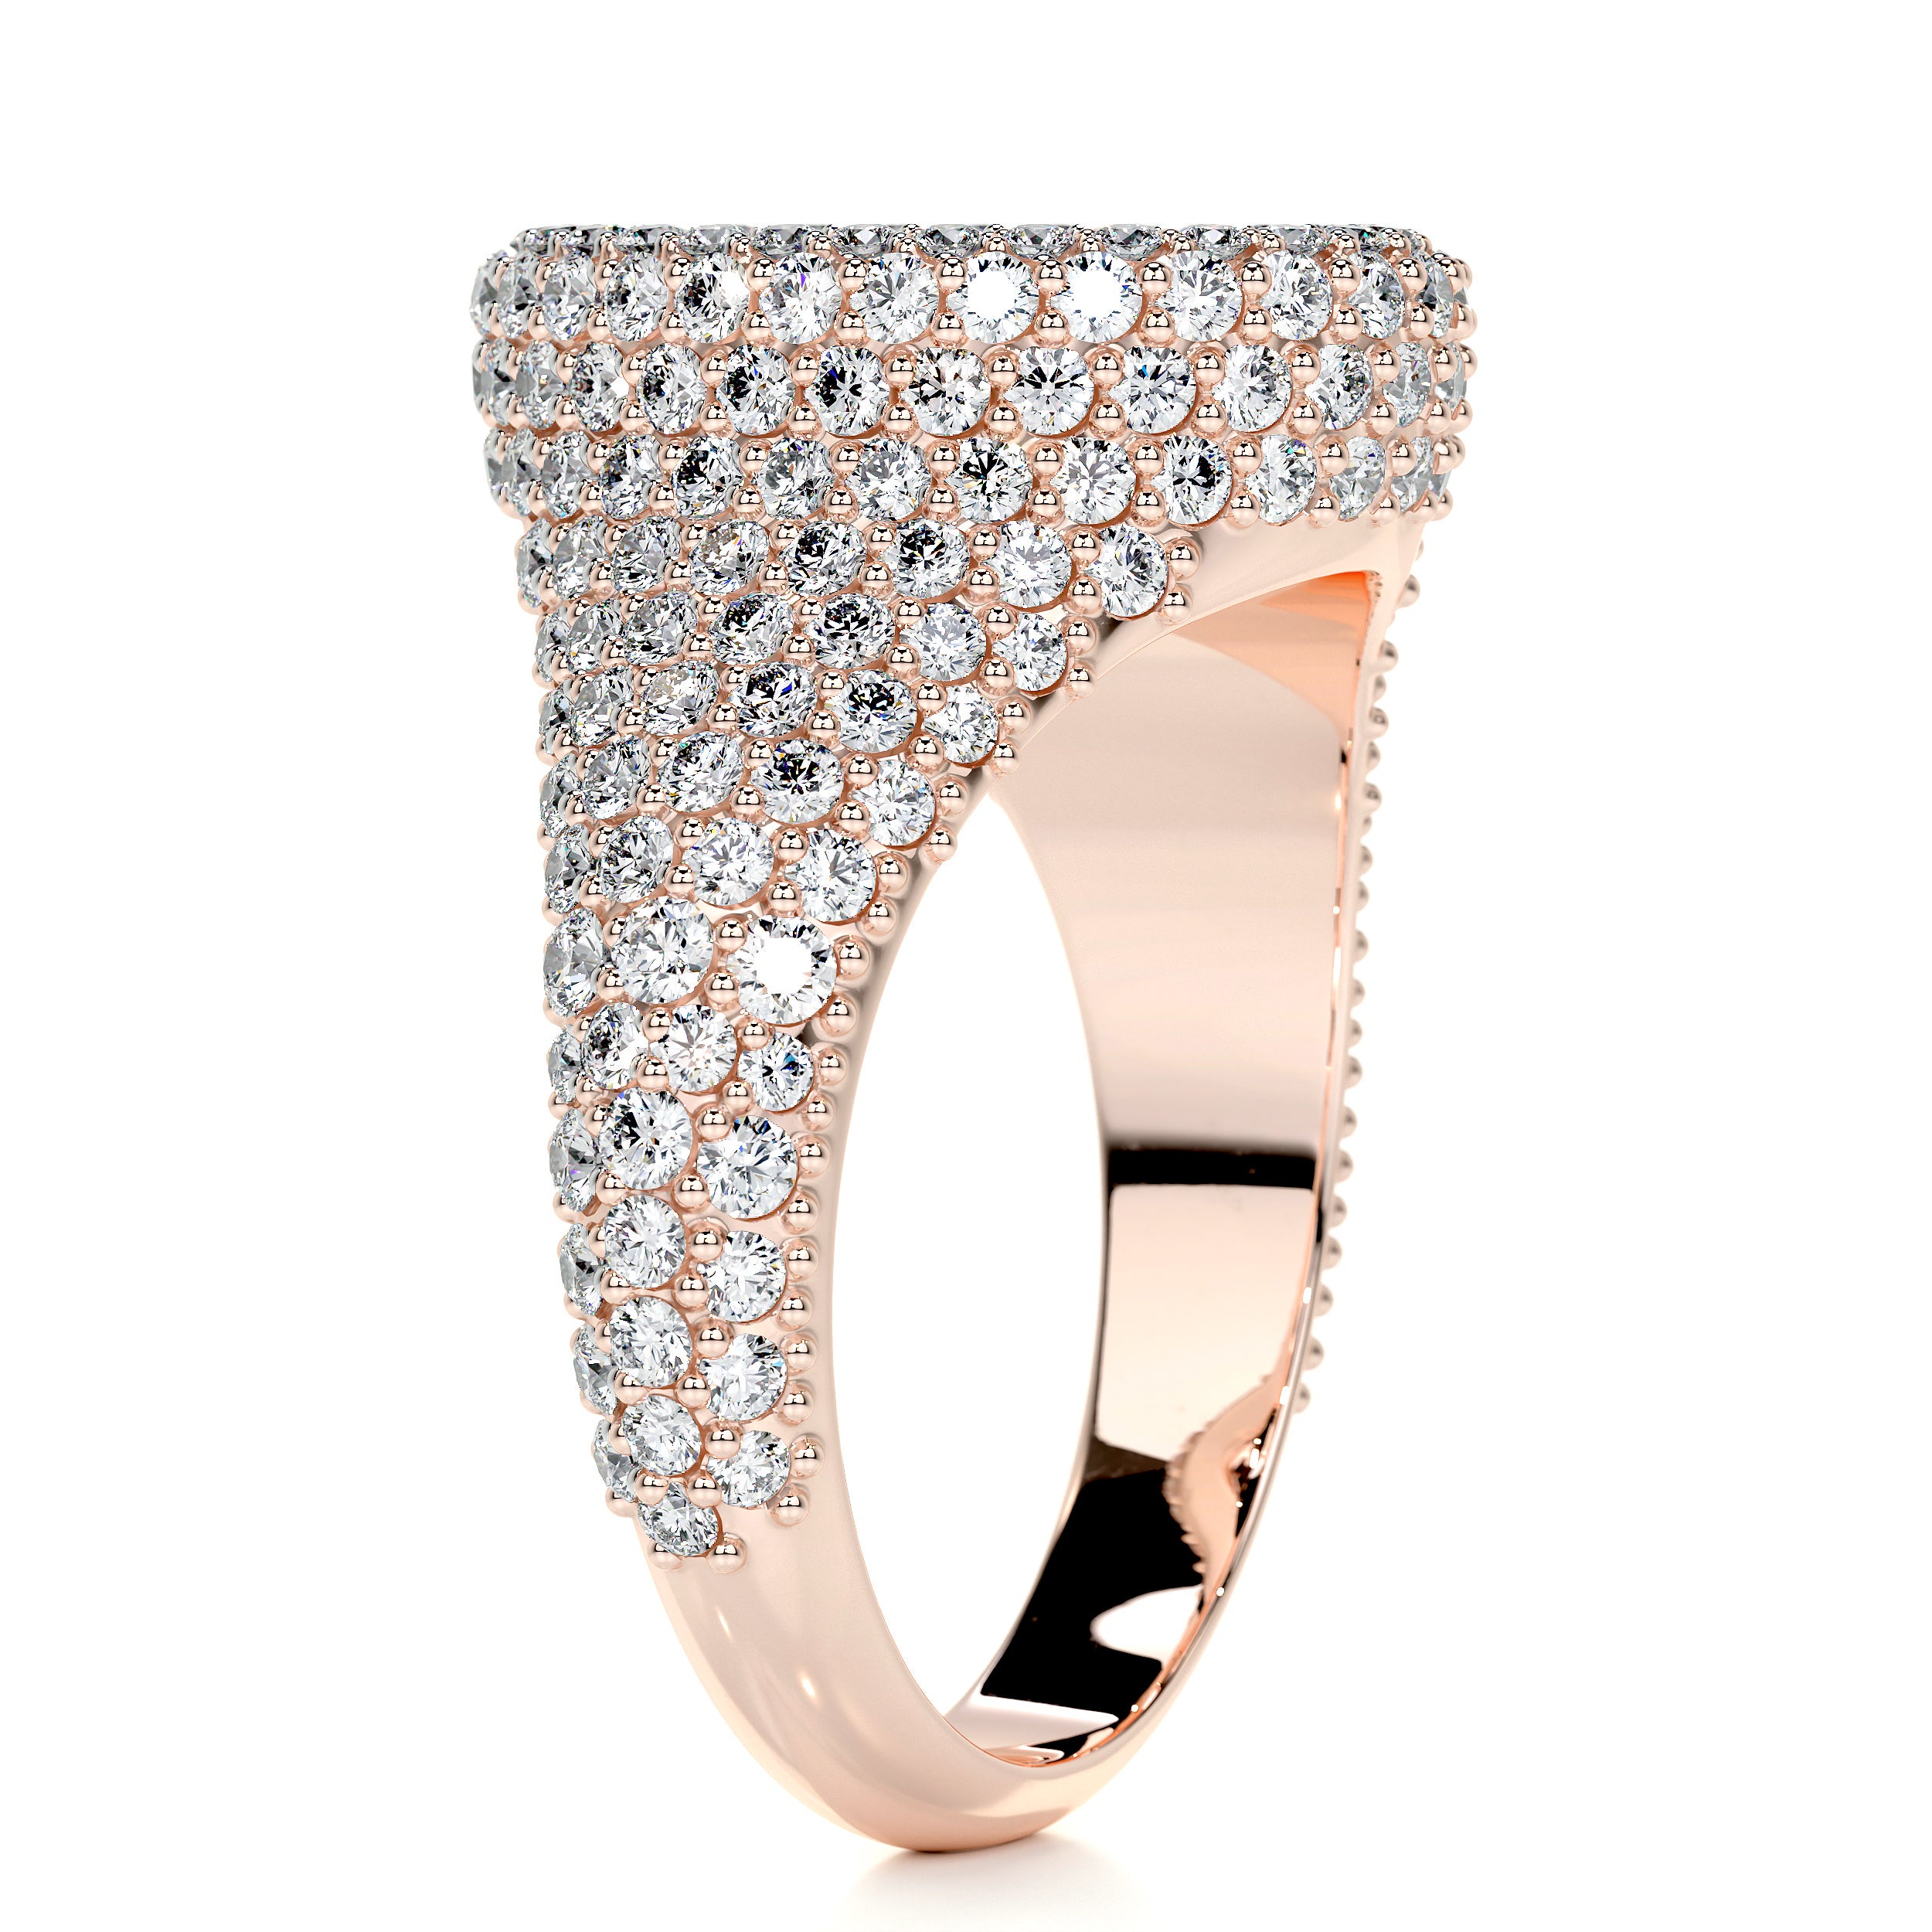 Angelina Wedding Ring   (1.4 Carat) -14K Rose Gold